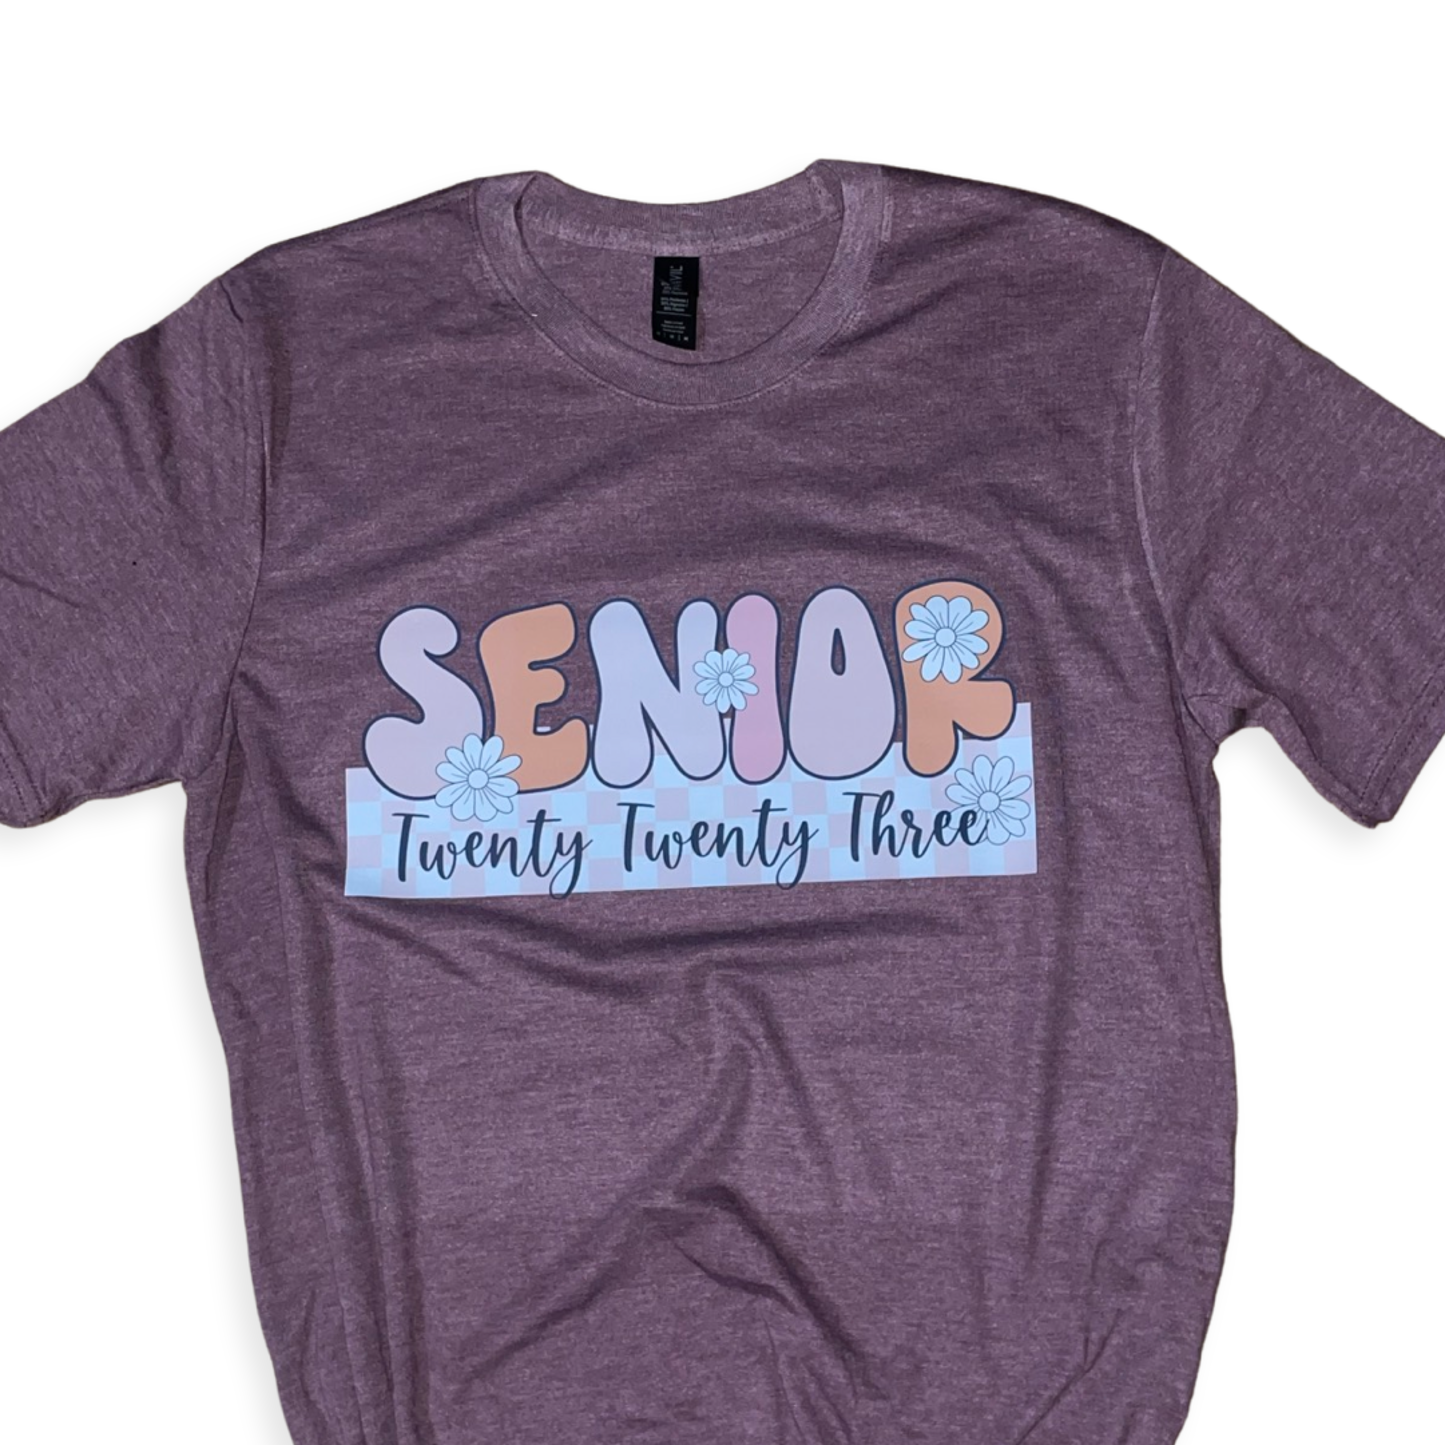 Retro senior shirt